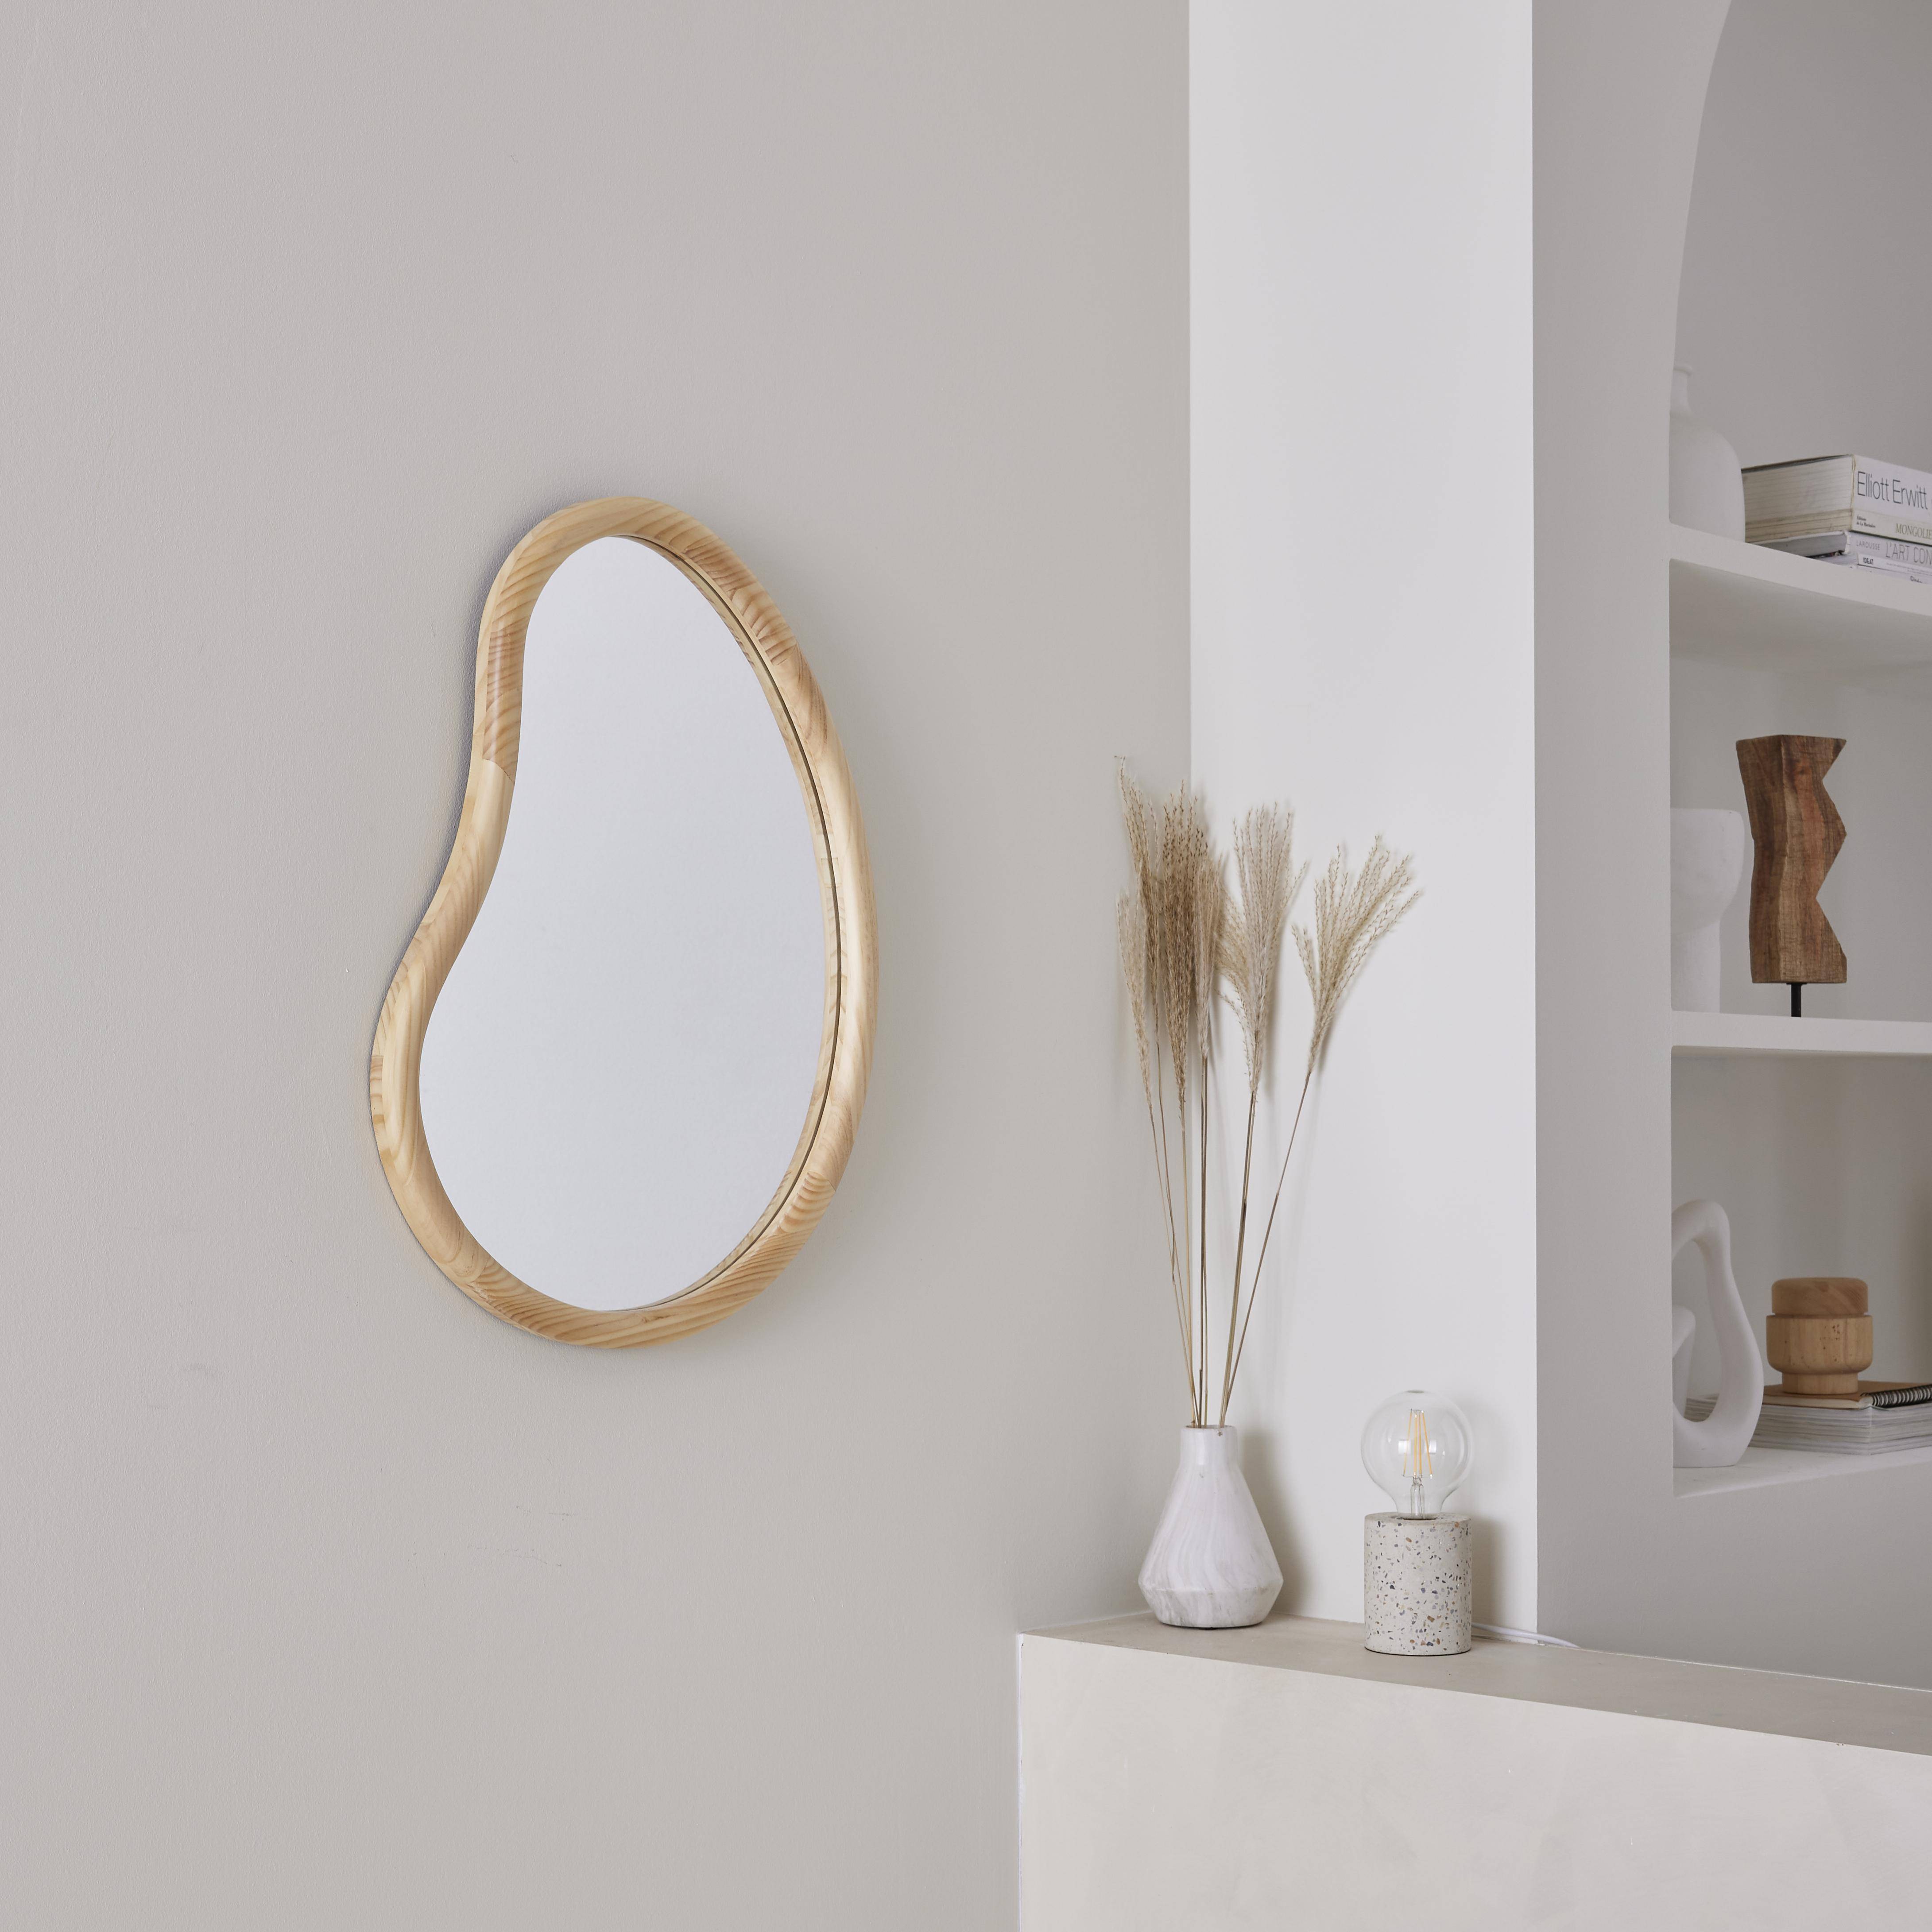 Miroir organique en bois de sapin 65cm épaisseur 3cm coloris naturel idéal entrée, chambre ou salle de bain,sweeek,Photo1